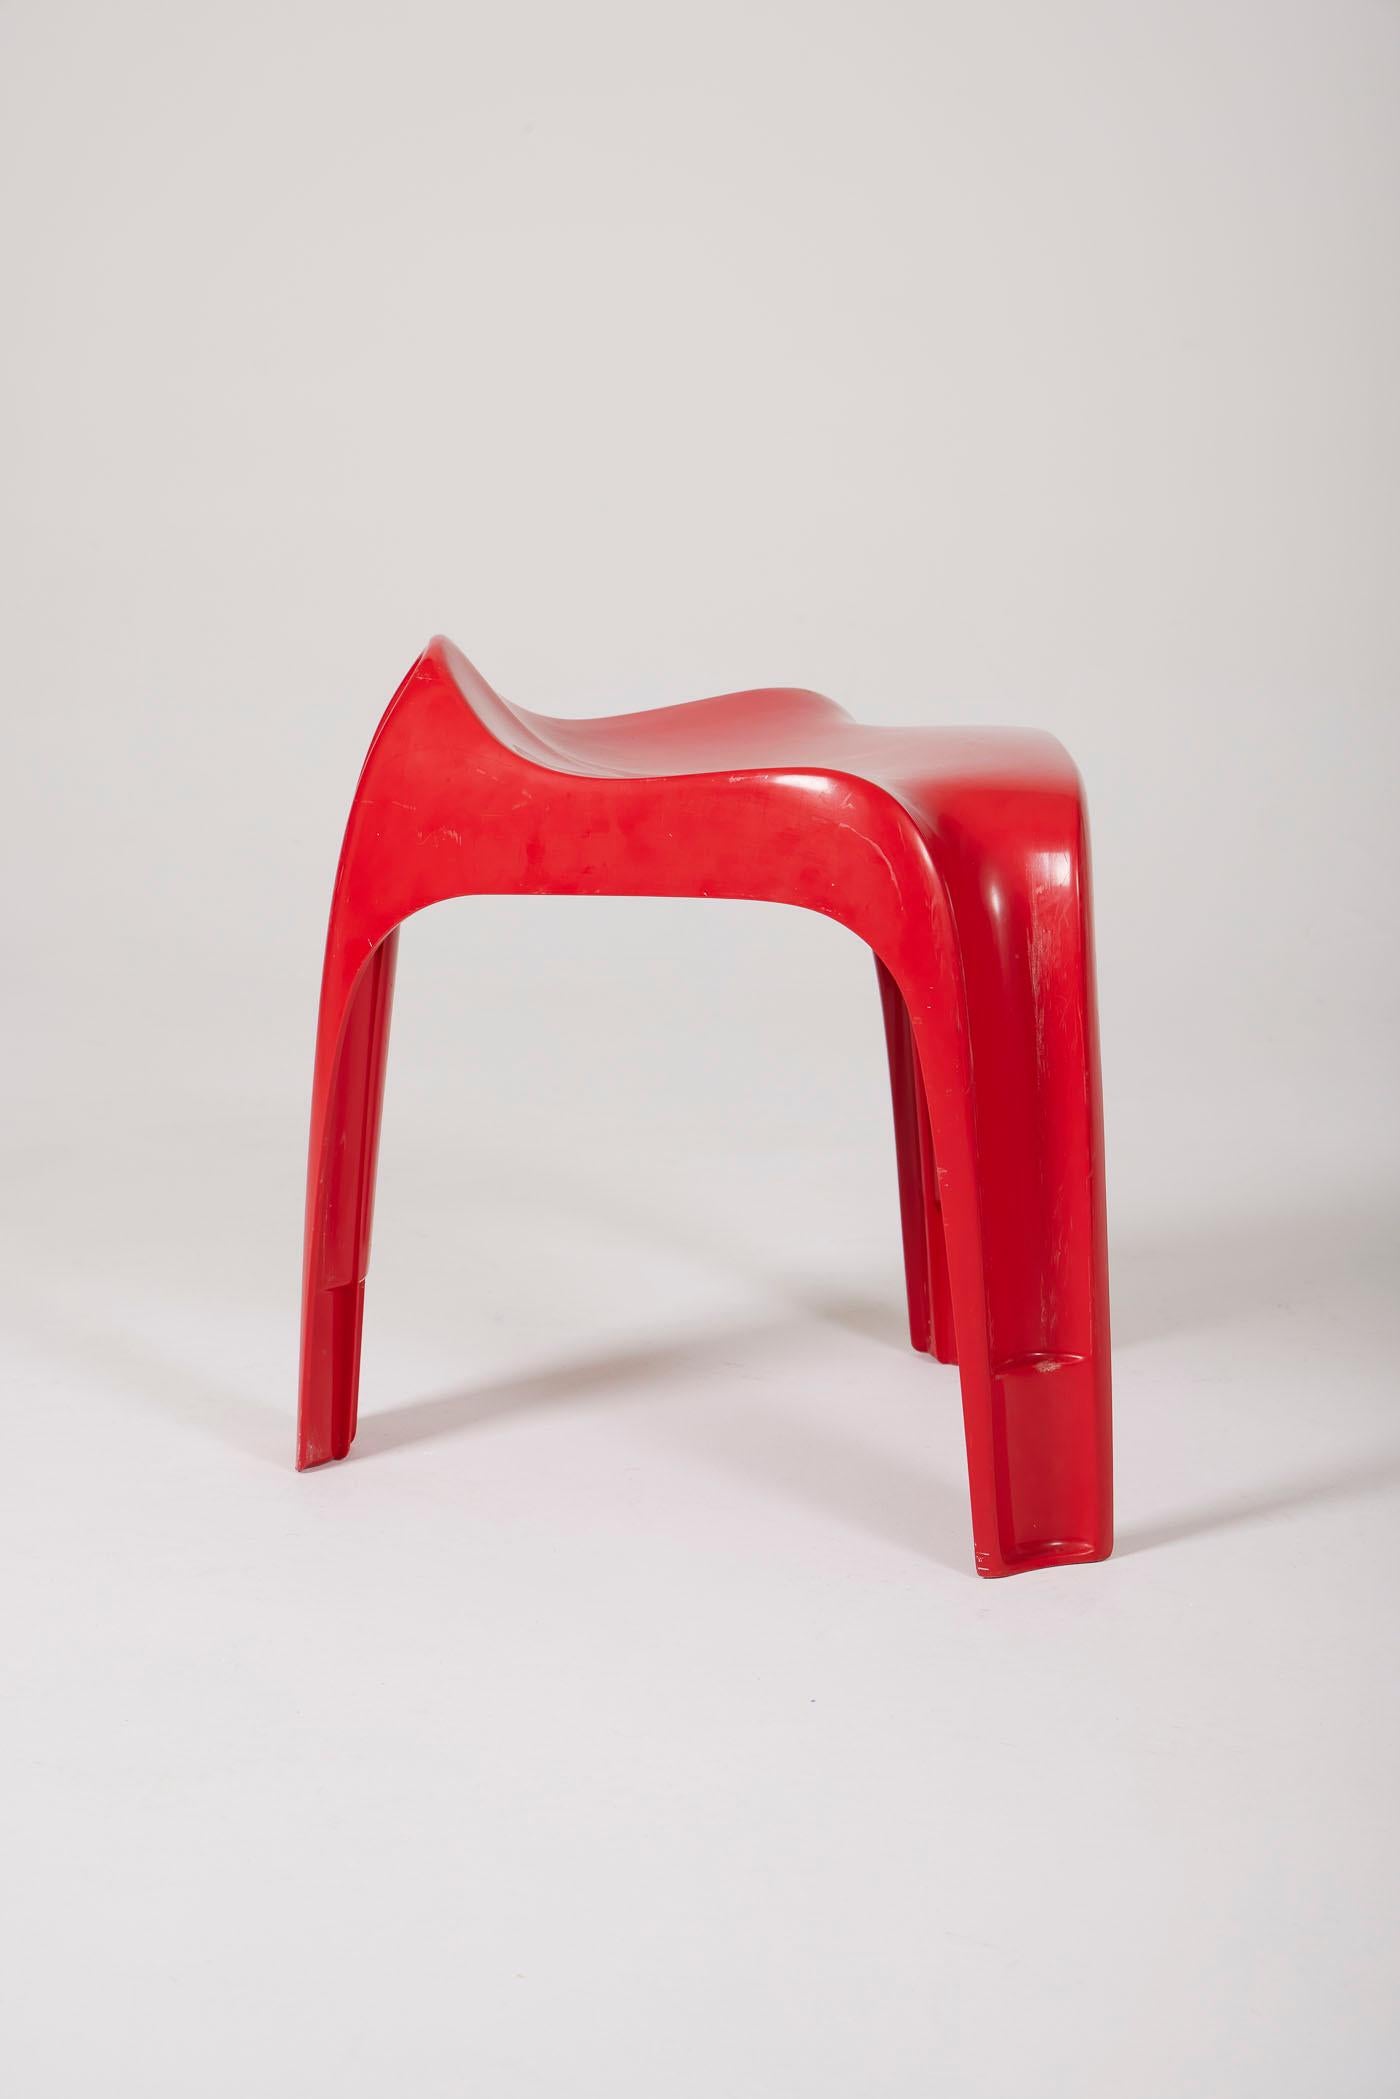 Plastic Alexander Begge stool For Sale